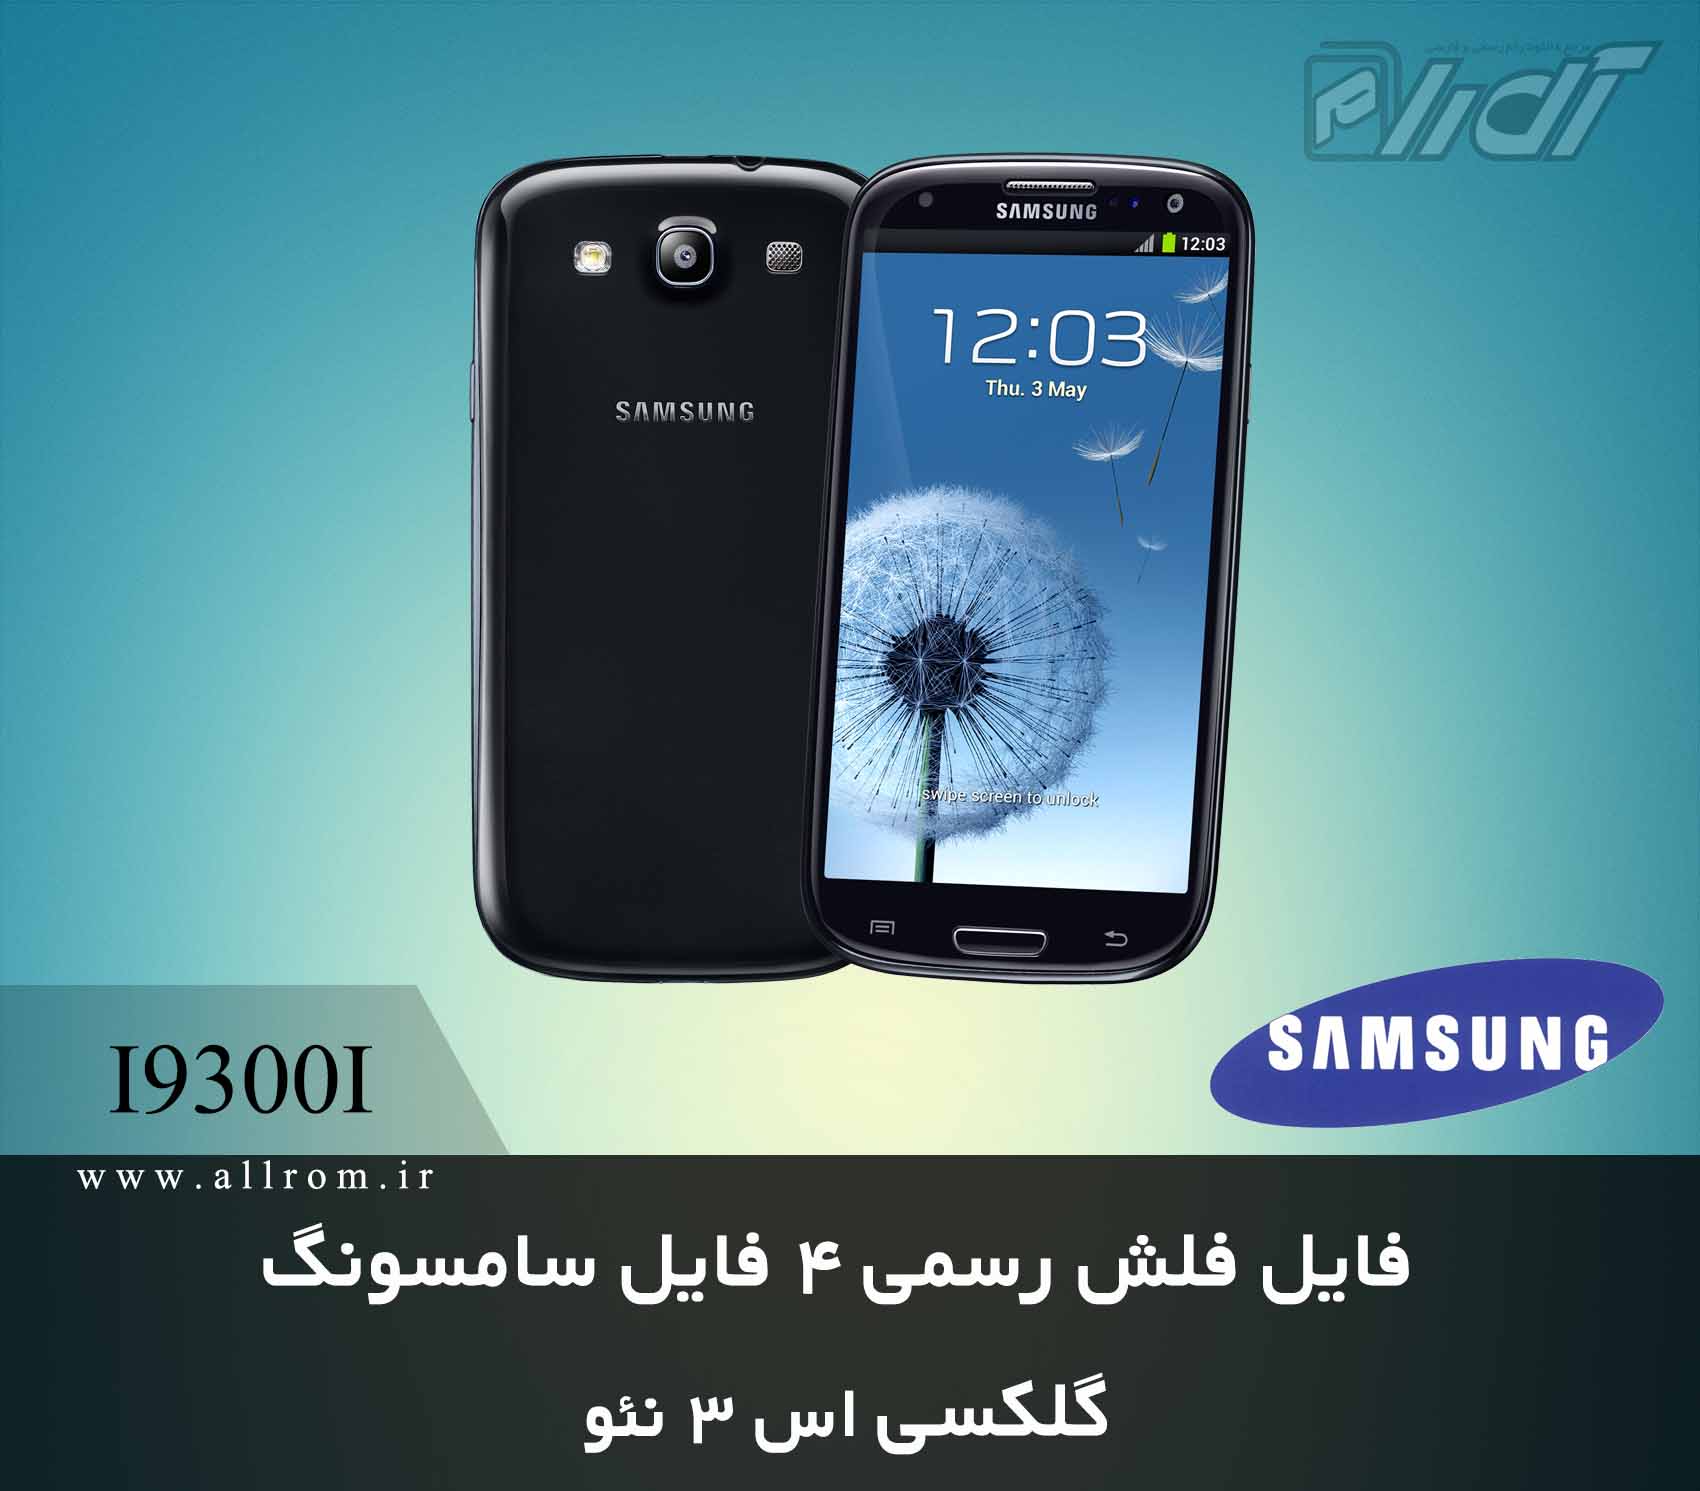 دانلود رام کامبینیشن Samsung Galaxy S3 Neo GT-I9300I